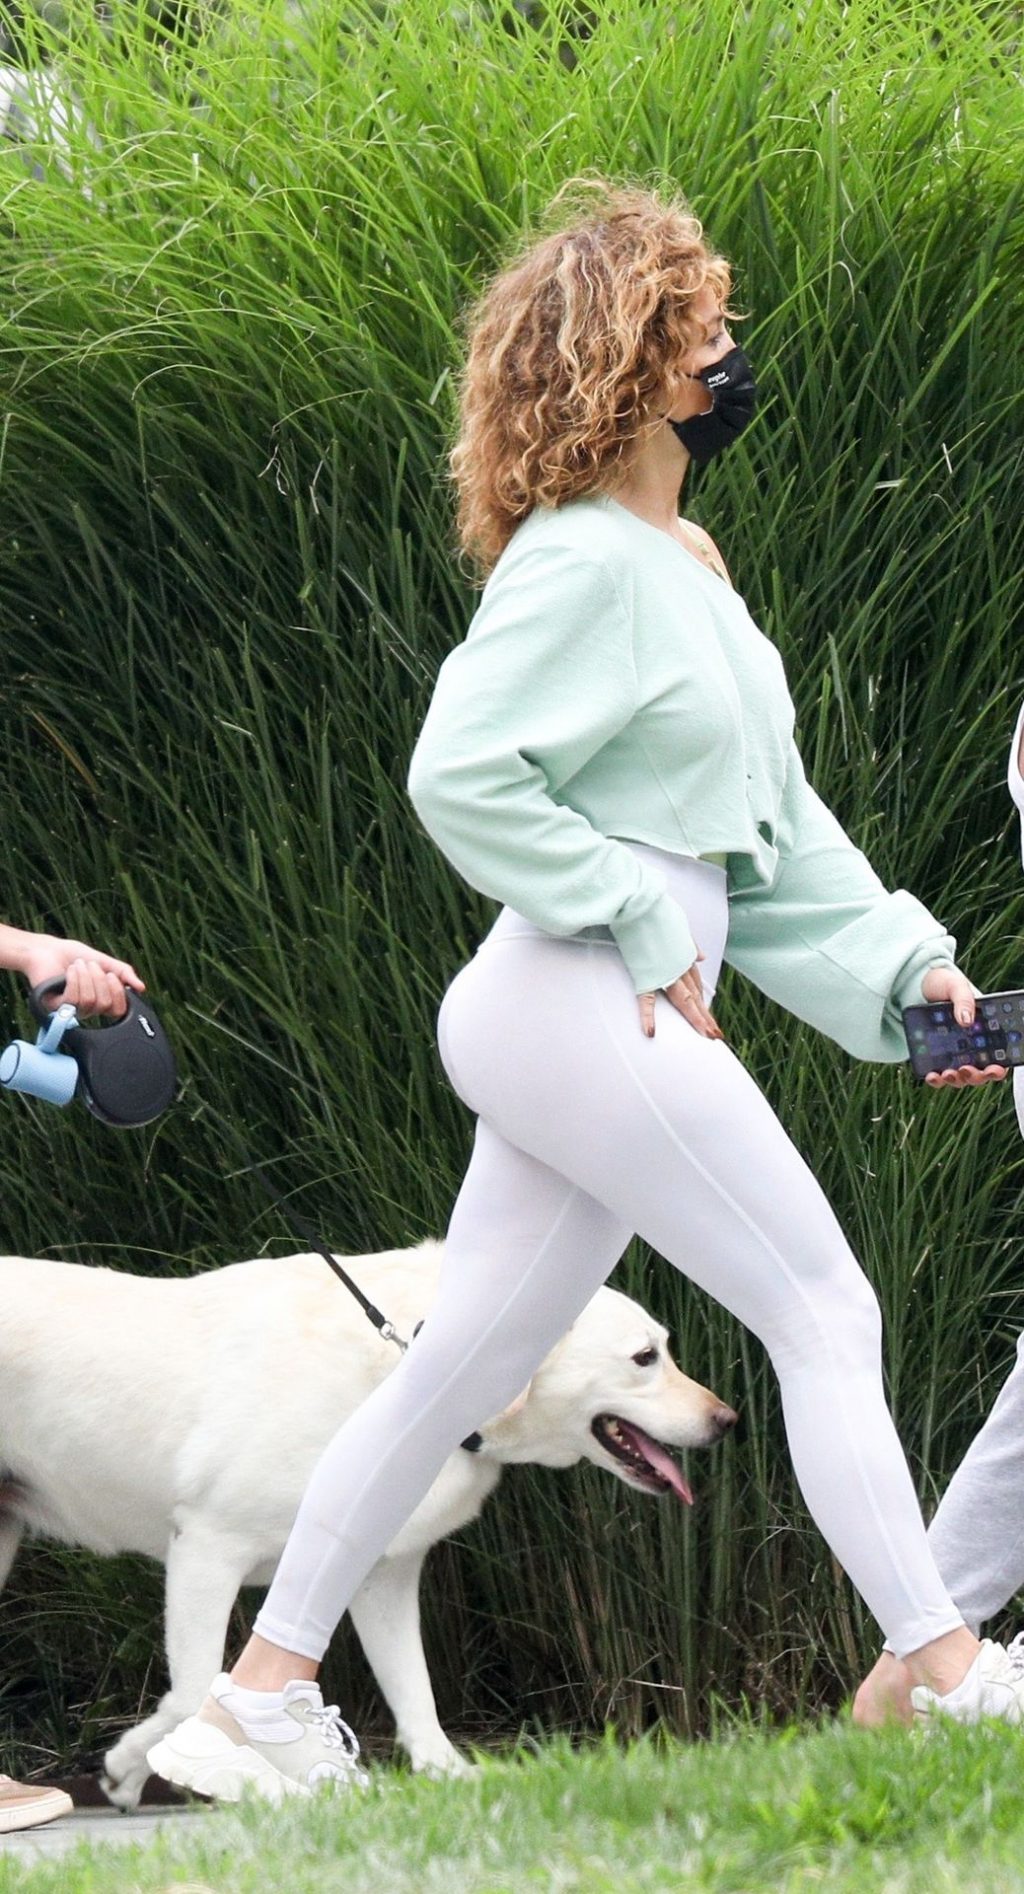 singer sexy photos Jennifer Lopez Instagram celebrity butt beach ass actress 